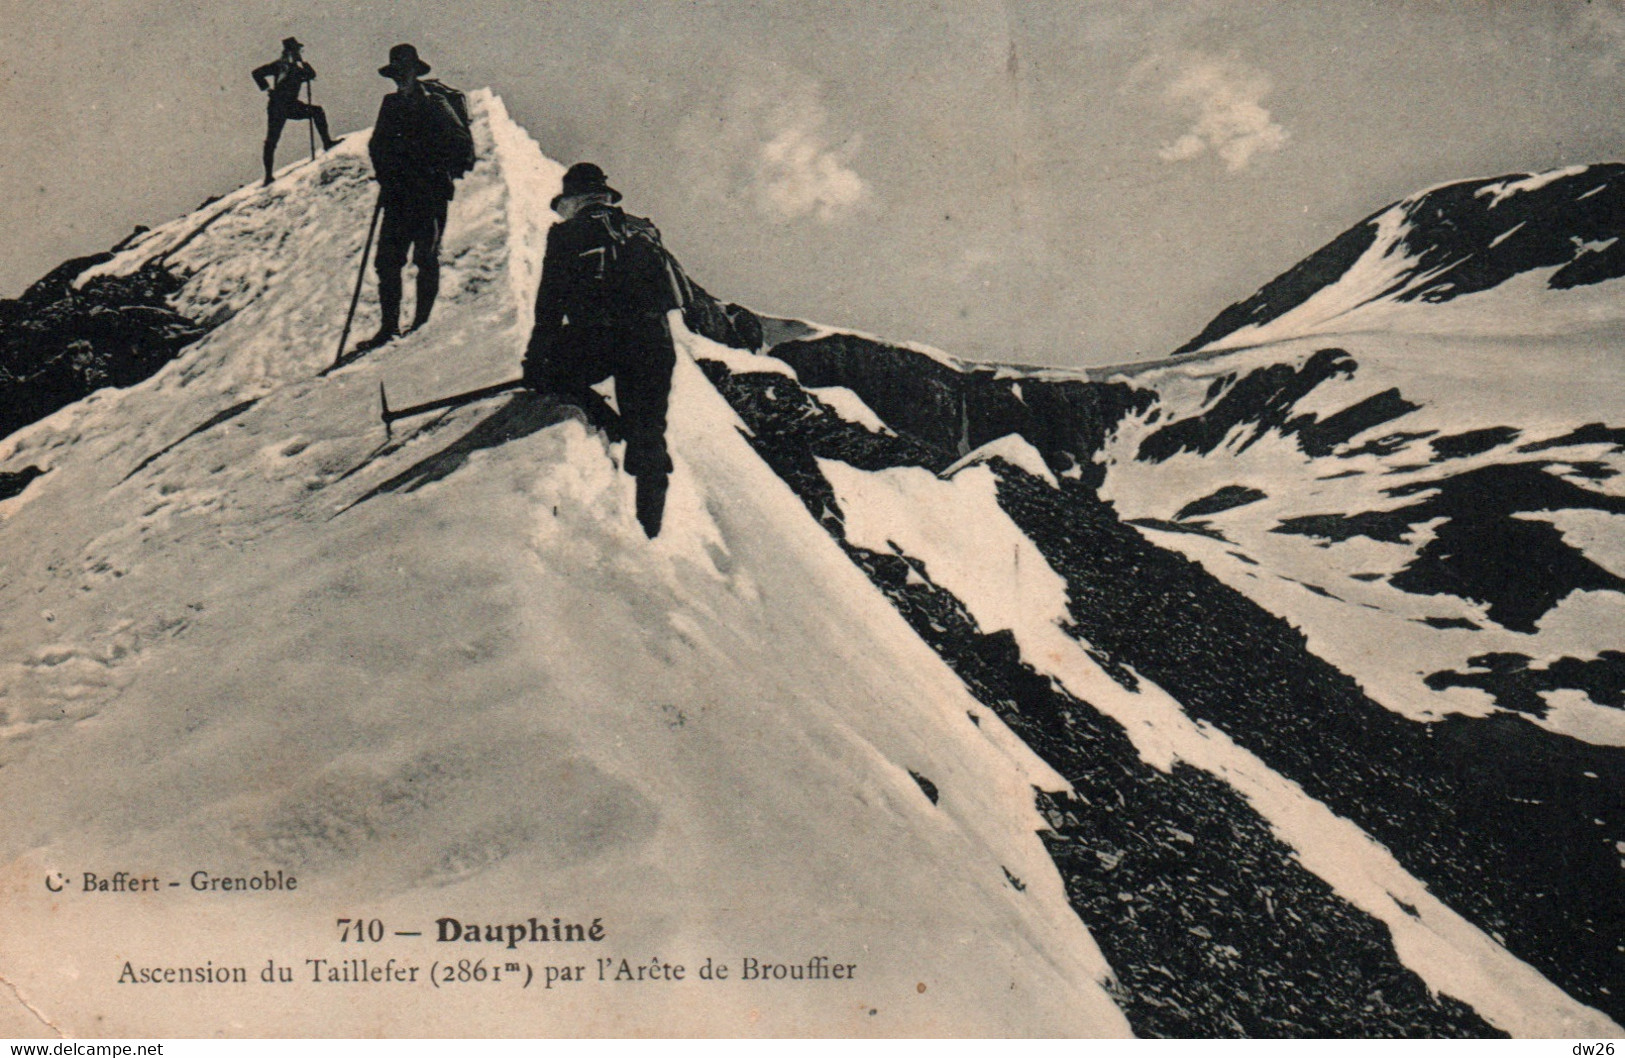 Alpinisme Dauphiné (Isère) Ascension Du Taillefer Par L'Arête De Brouffier - Edition C. Baffert - Carte N° 710 - Mountaineering, Alpinism